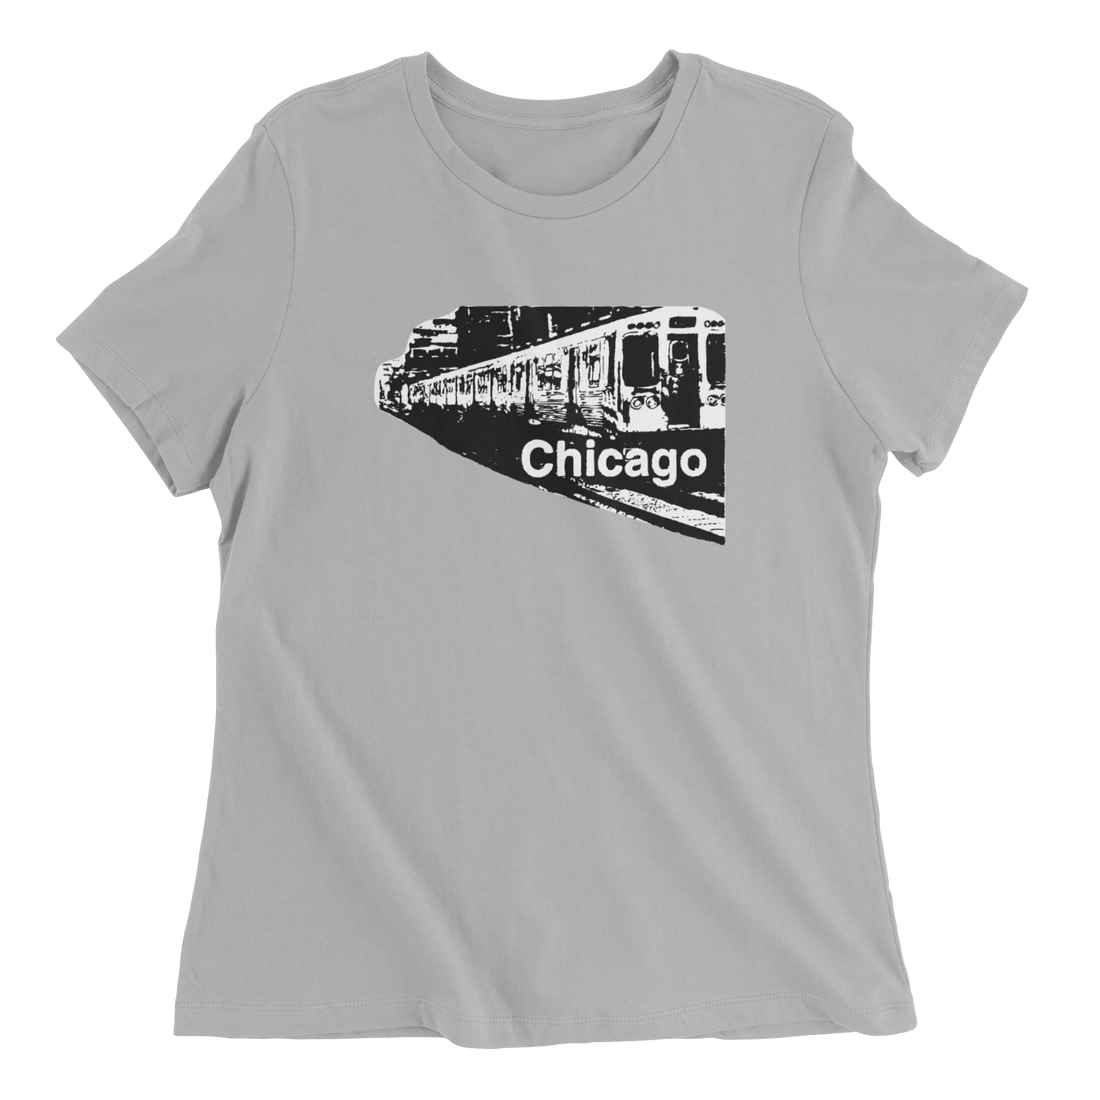 Chicago Train - The T-Shirt Deli, Co.